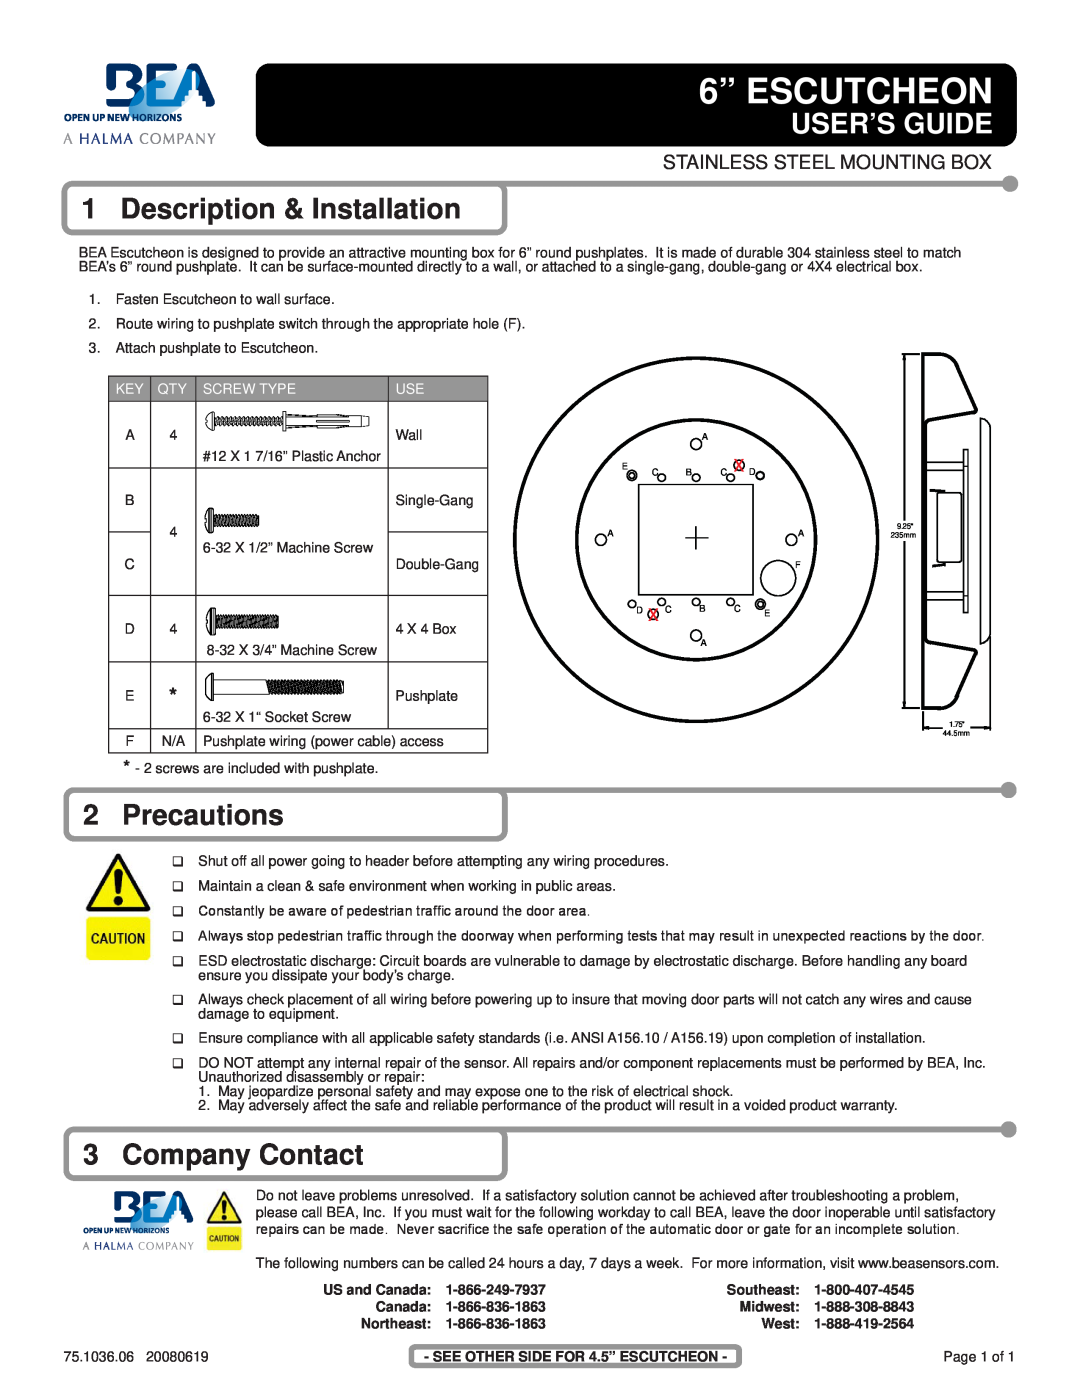 BEA 6" Escutcheon warranty 6” ESCUTCHEON, User’S Guide, Description & Installation, Precautions, Company Contact, Canada 